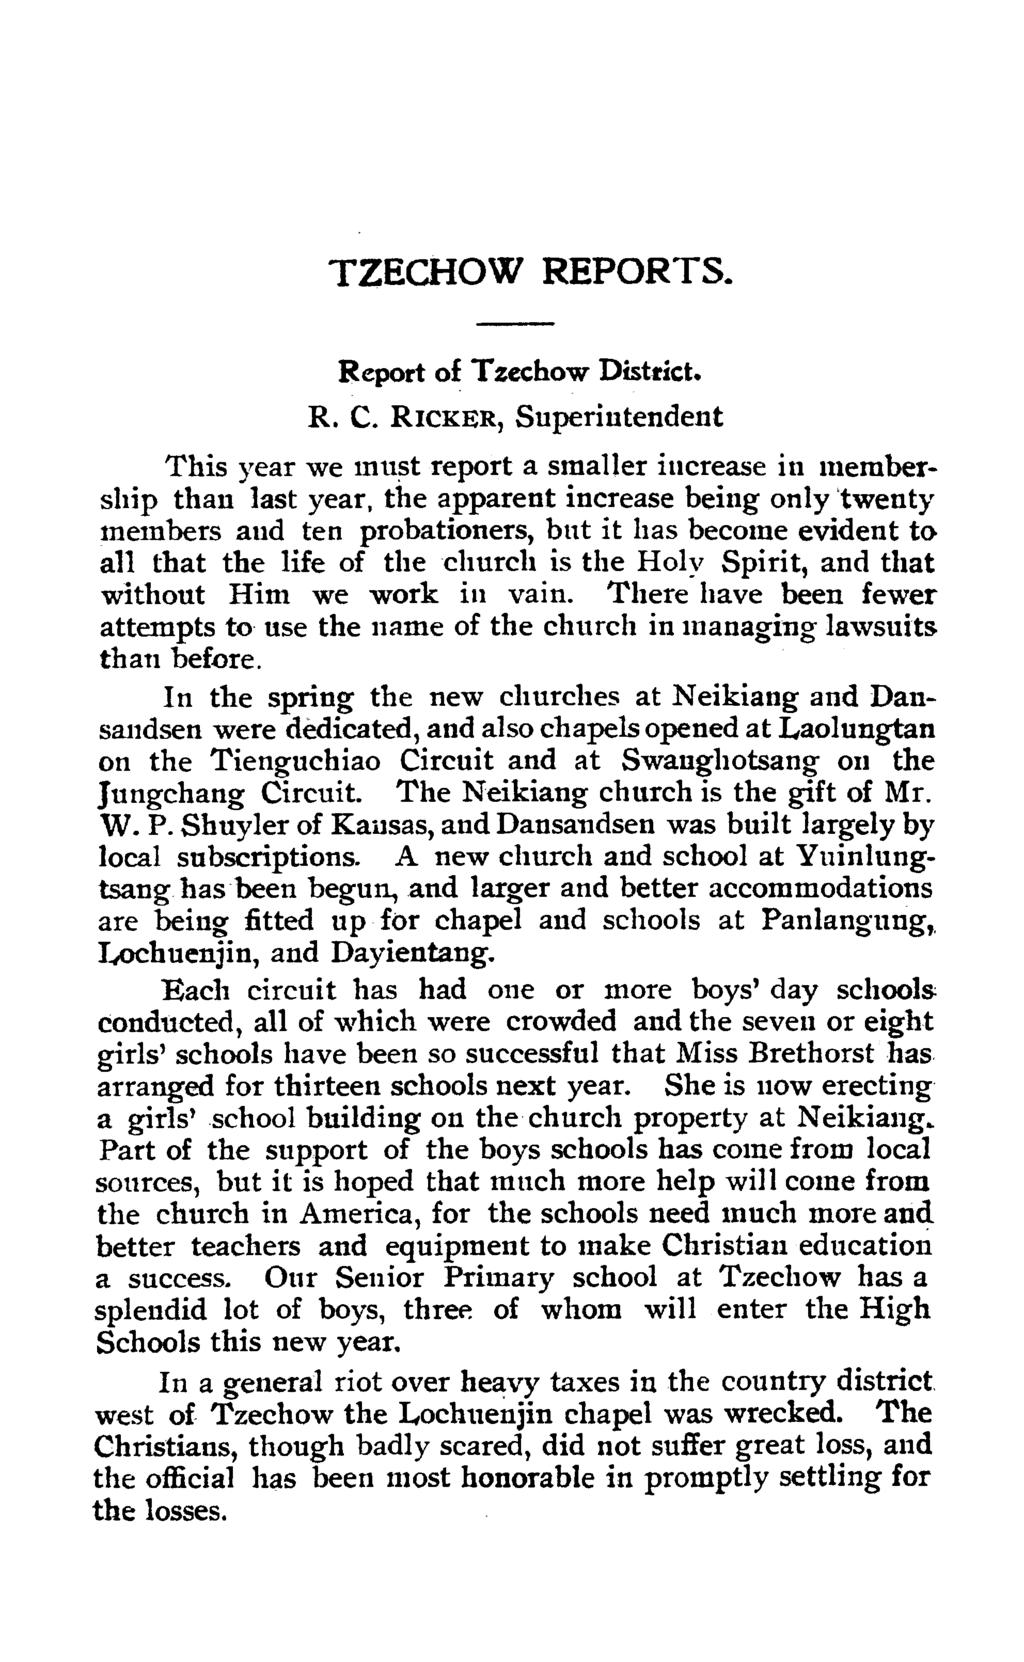 TZECHOW REPORTS. Report of T zechow Disbict. R. C.